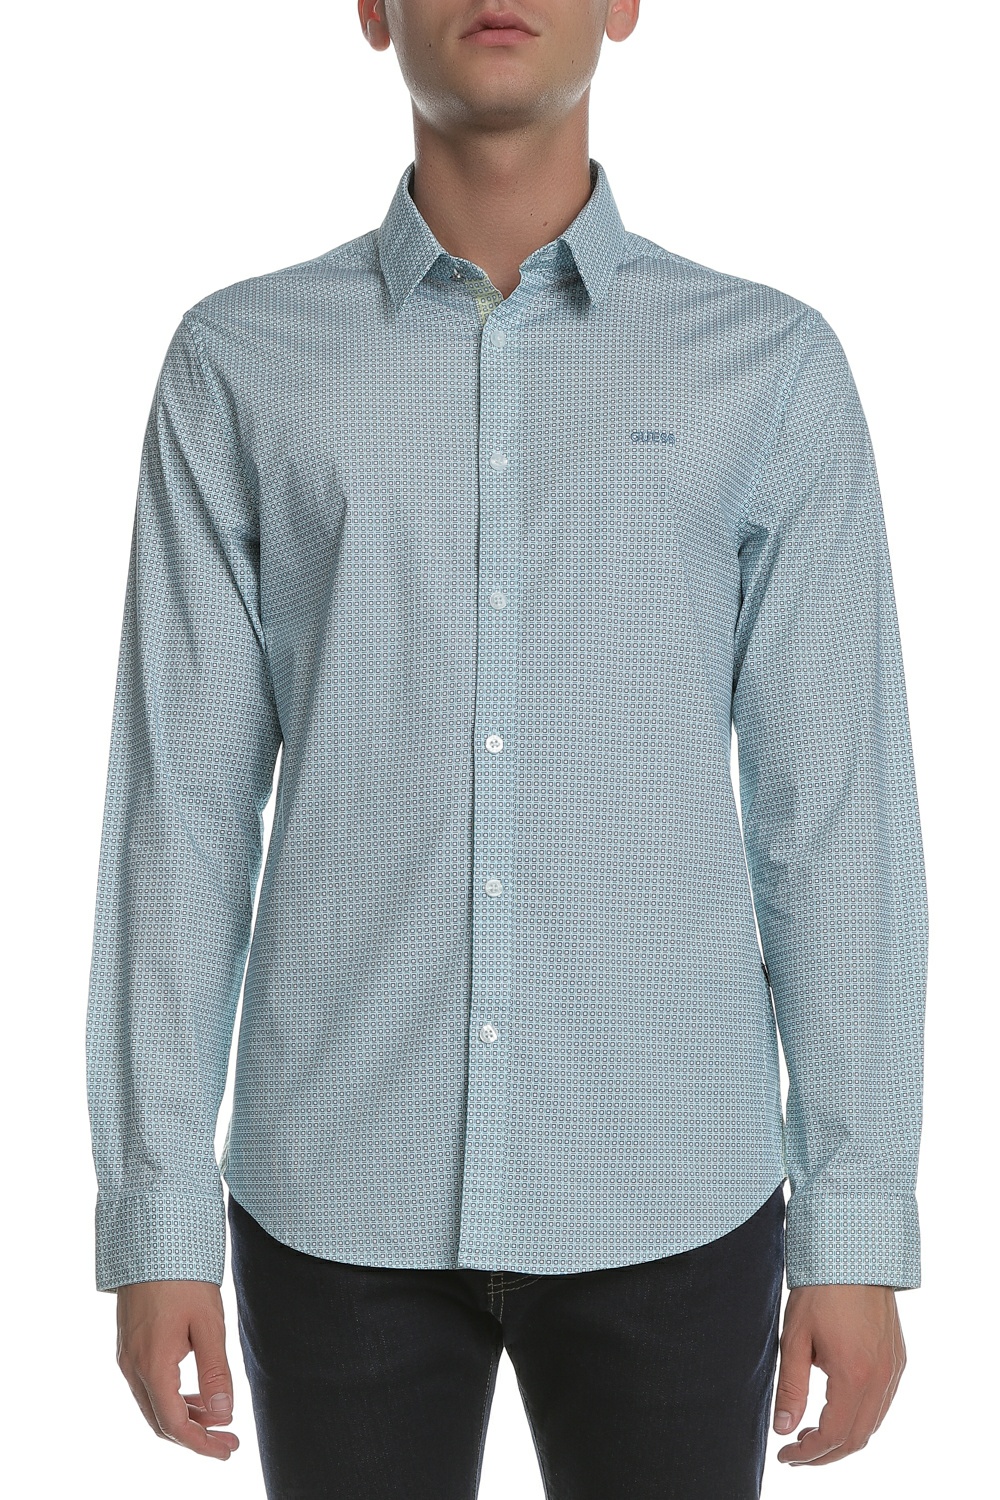 Ανδρικά/Ρούχα/Πουκάμισα/Μακρυμάνικα GUESS - Ανδικό μακρυμάνικο πουκάμισο Guess γαλάζιο